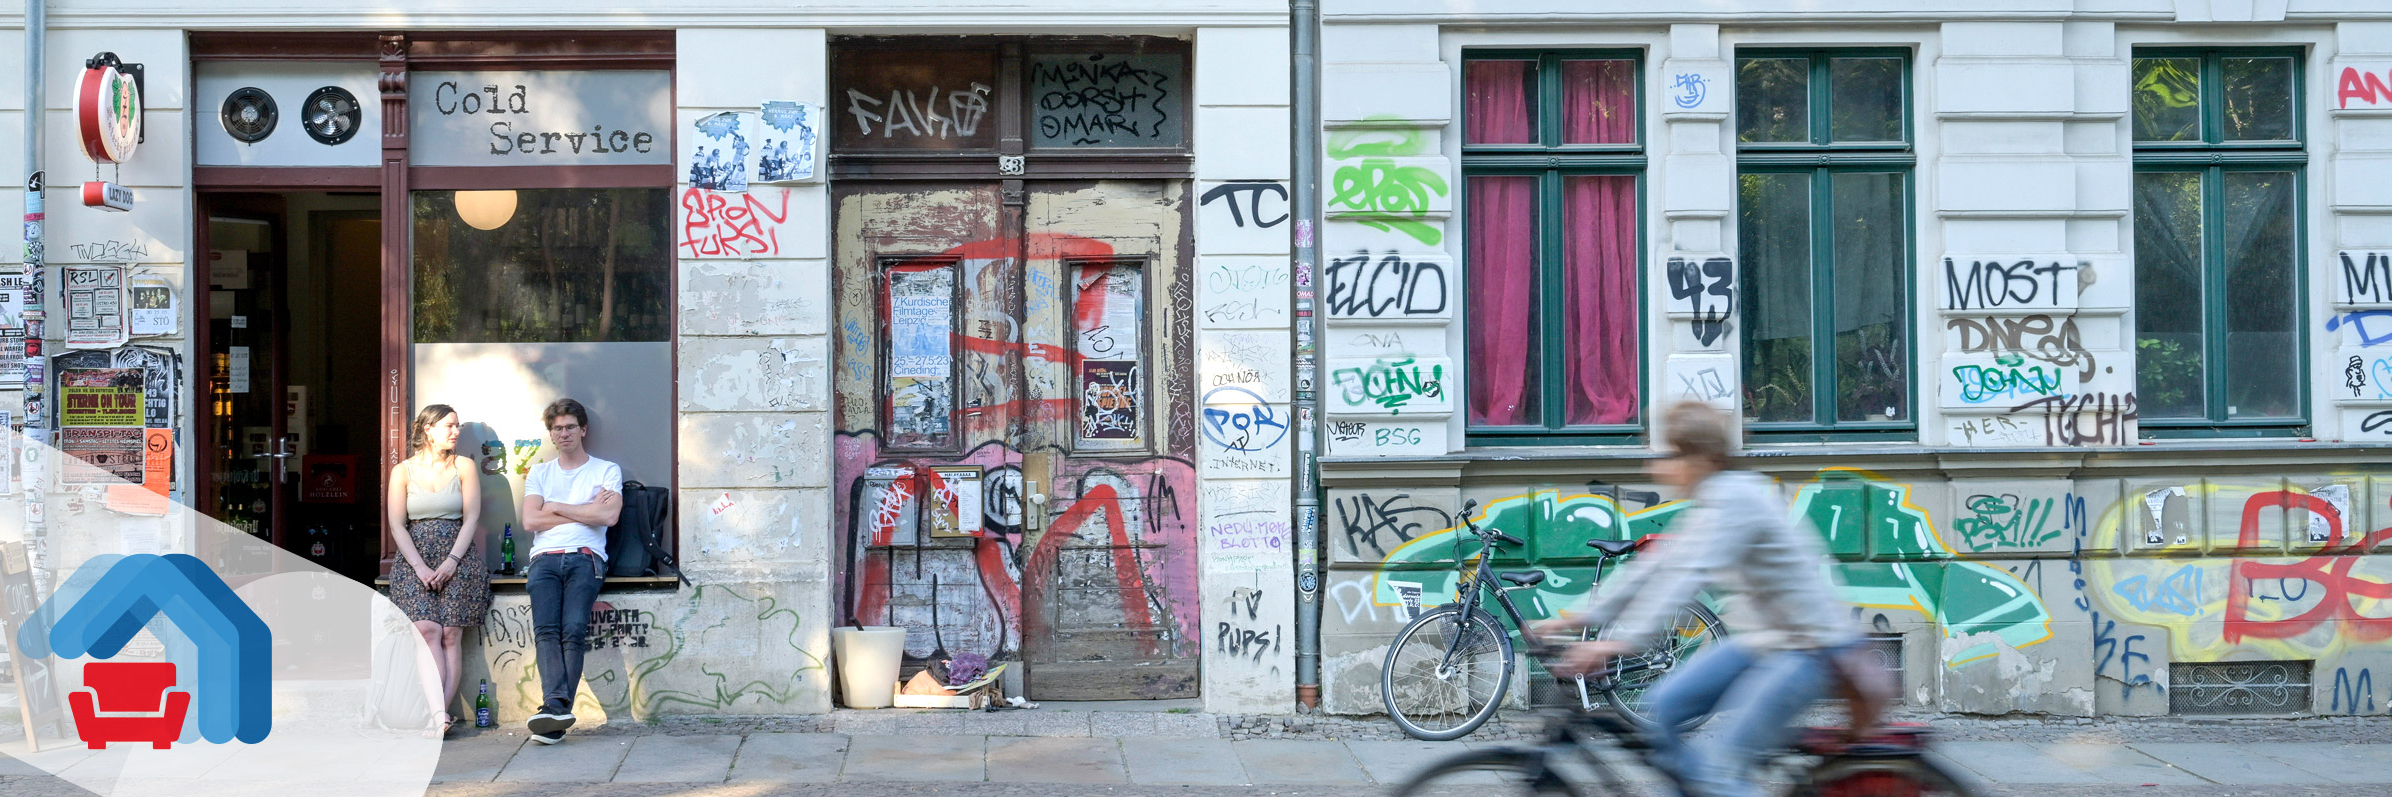 Wohnhaus, Altbau, Graffitis, Wolfgang-Heinze-Straße, Connewitz, Leipzig, Sachsen, Deutschland 